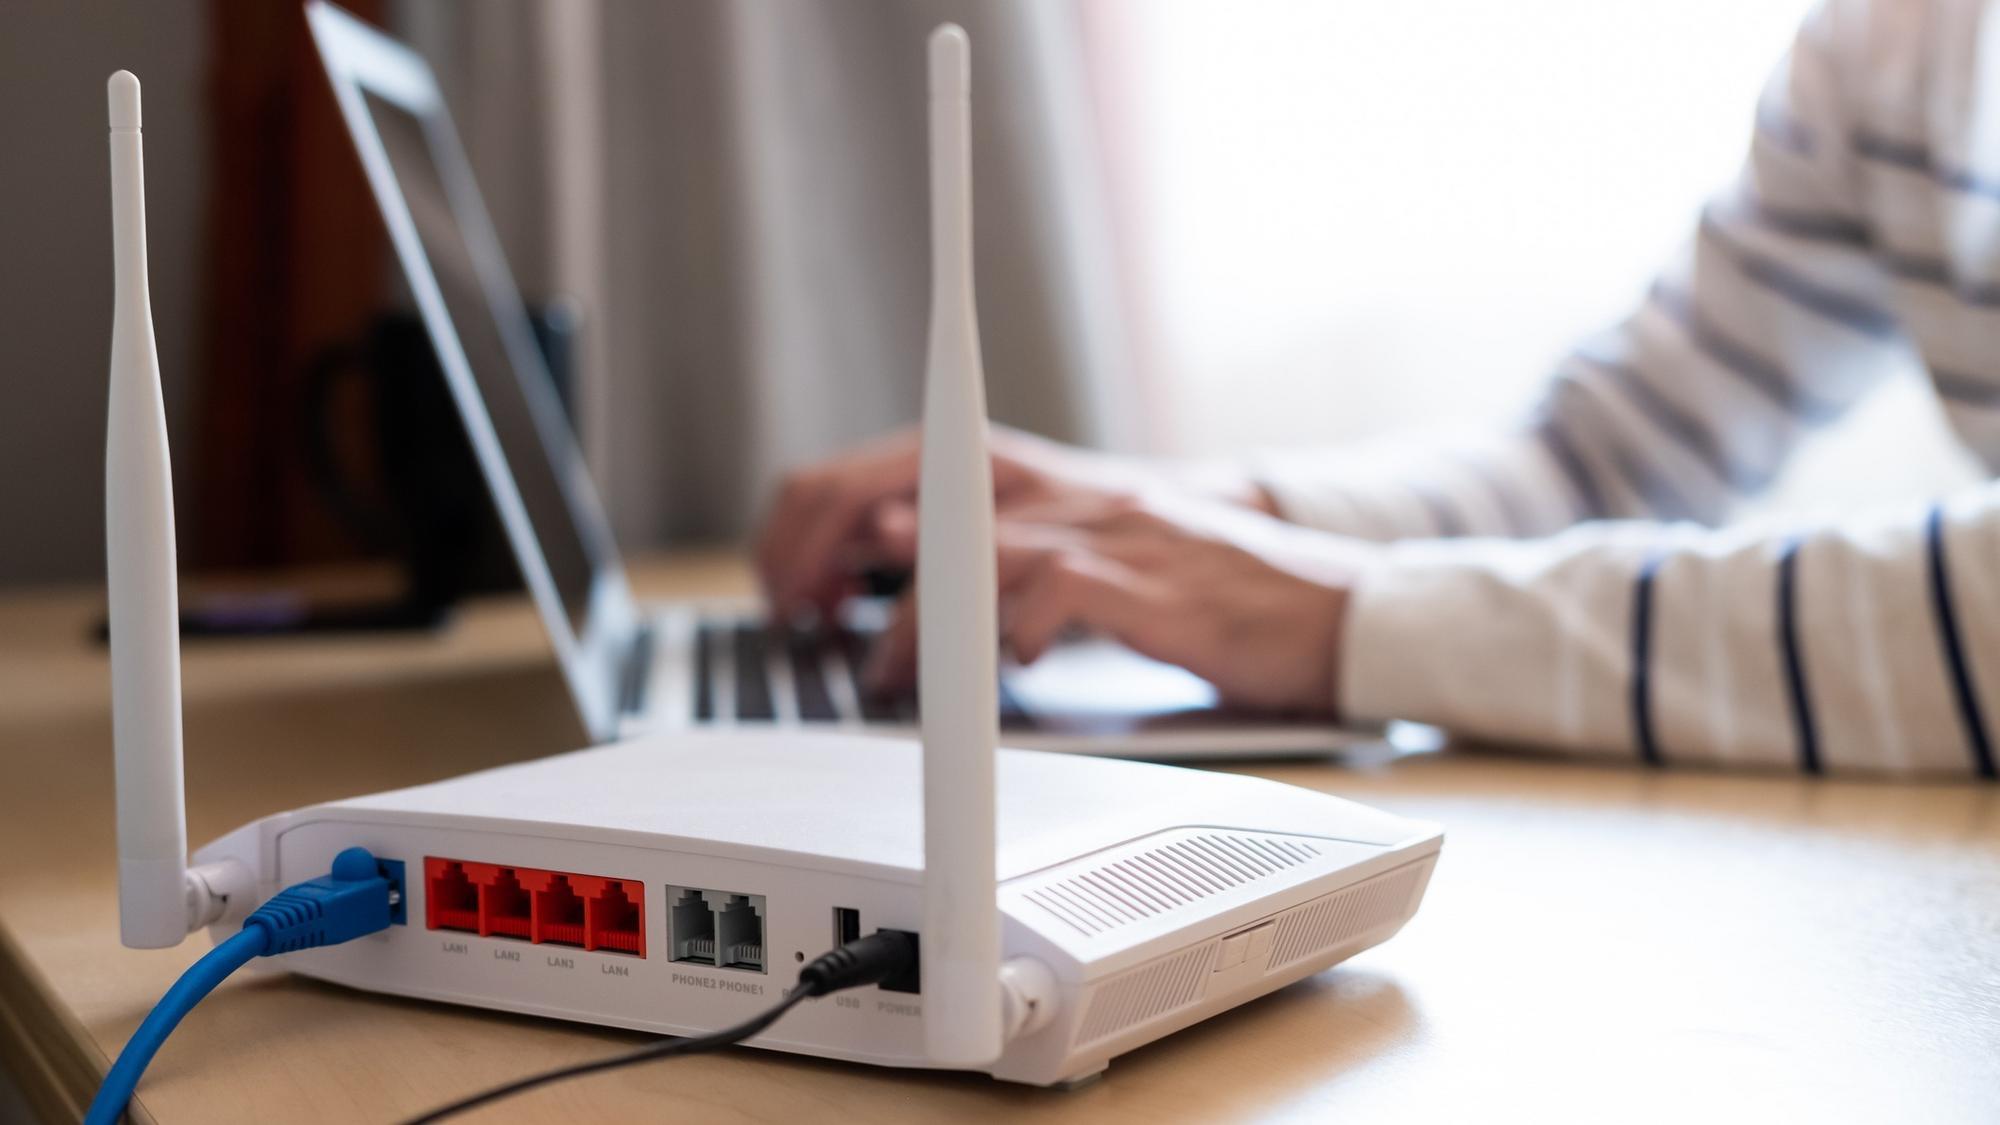 Novšie routery od TP-Link môžu tajne odosielať údaje. Výrobca sa bráni, no  sľúbil aktualizáciu